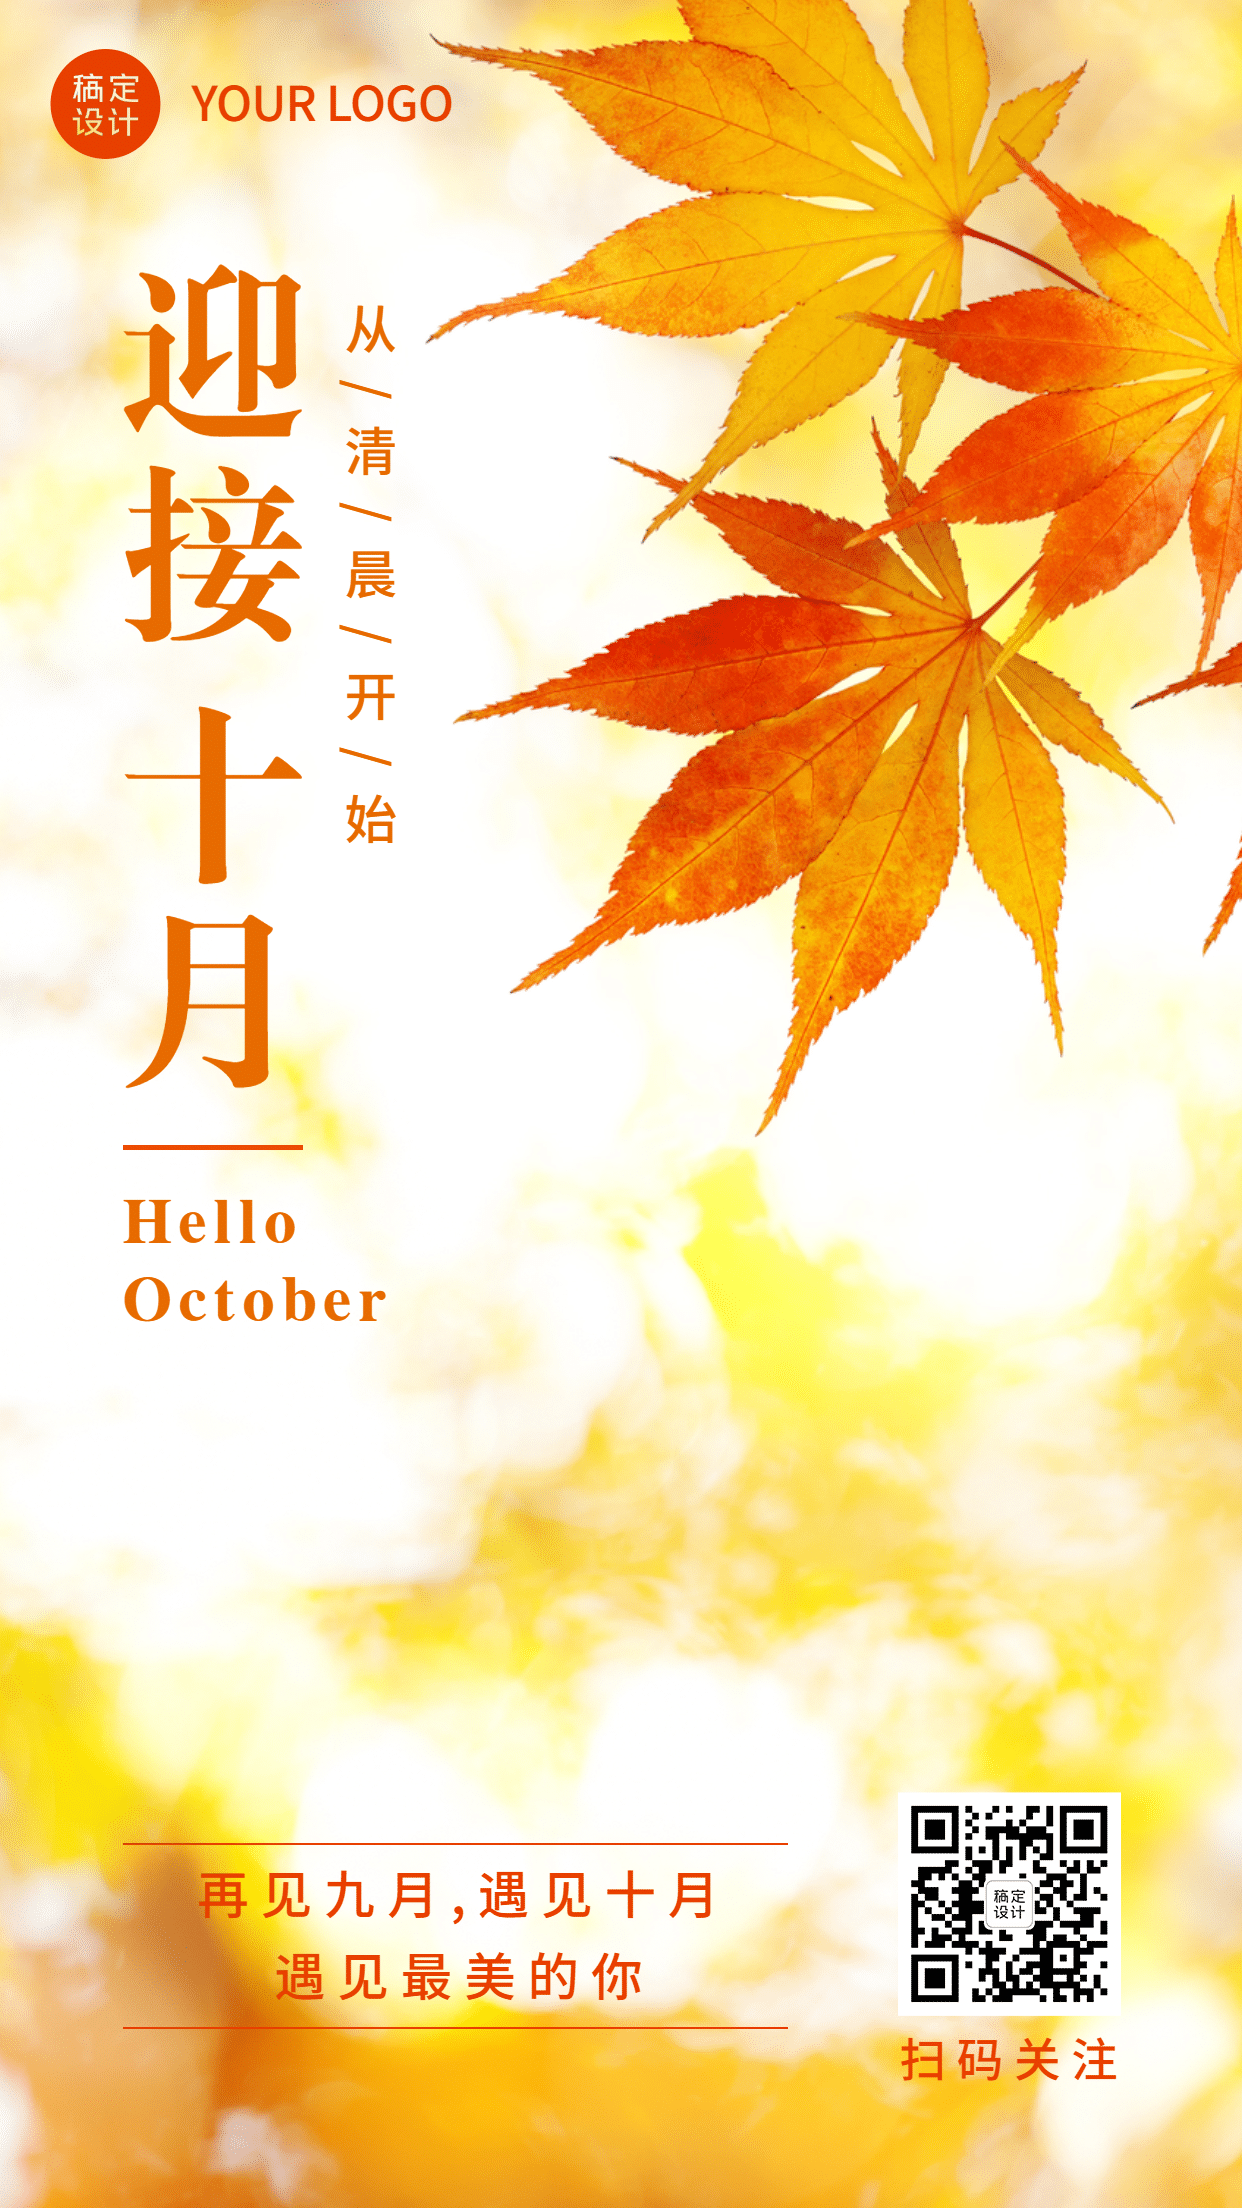 通用10月你好祝福文艺手机海报预览效果